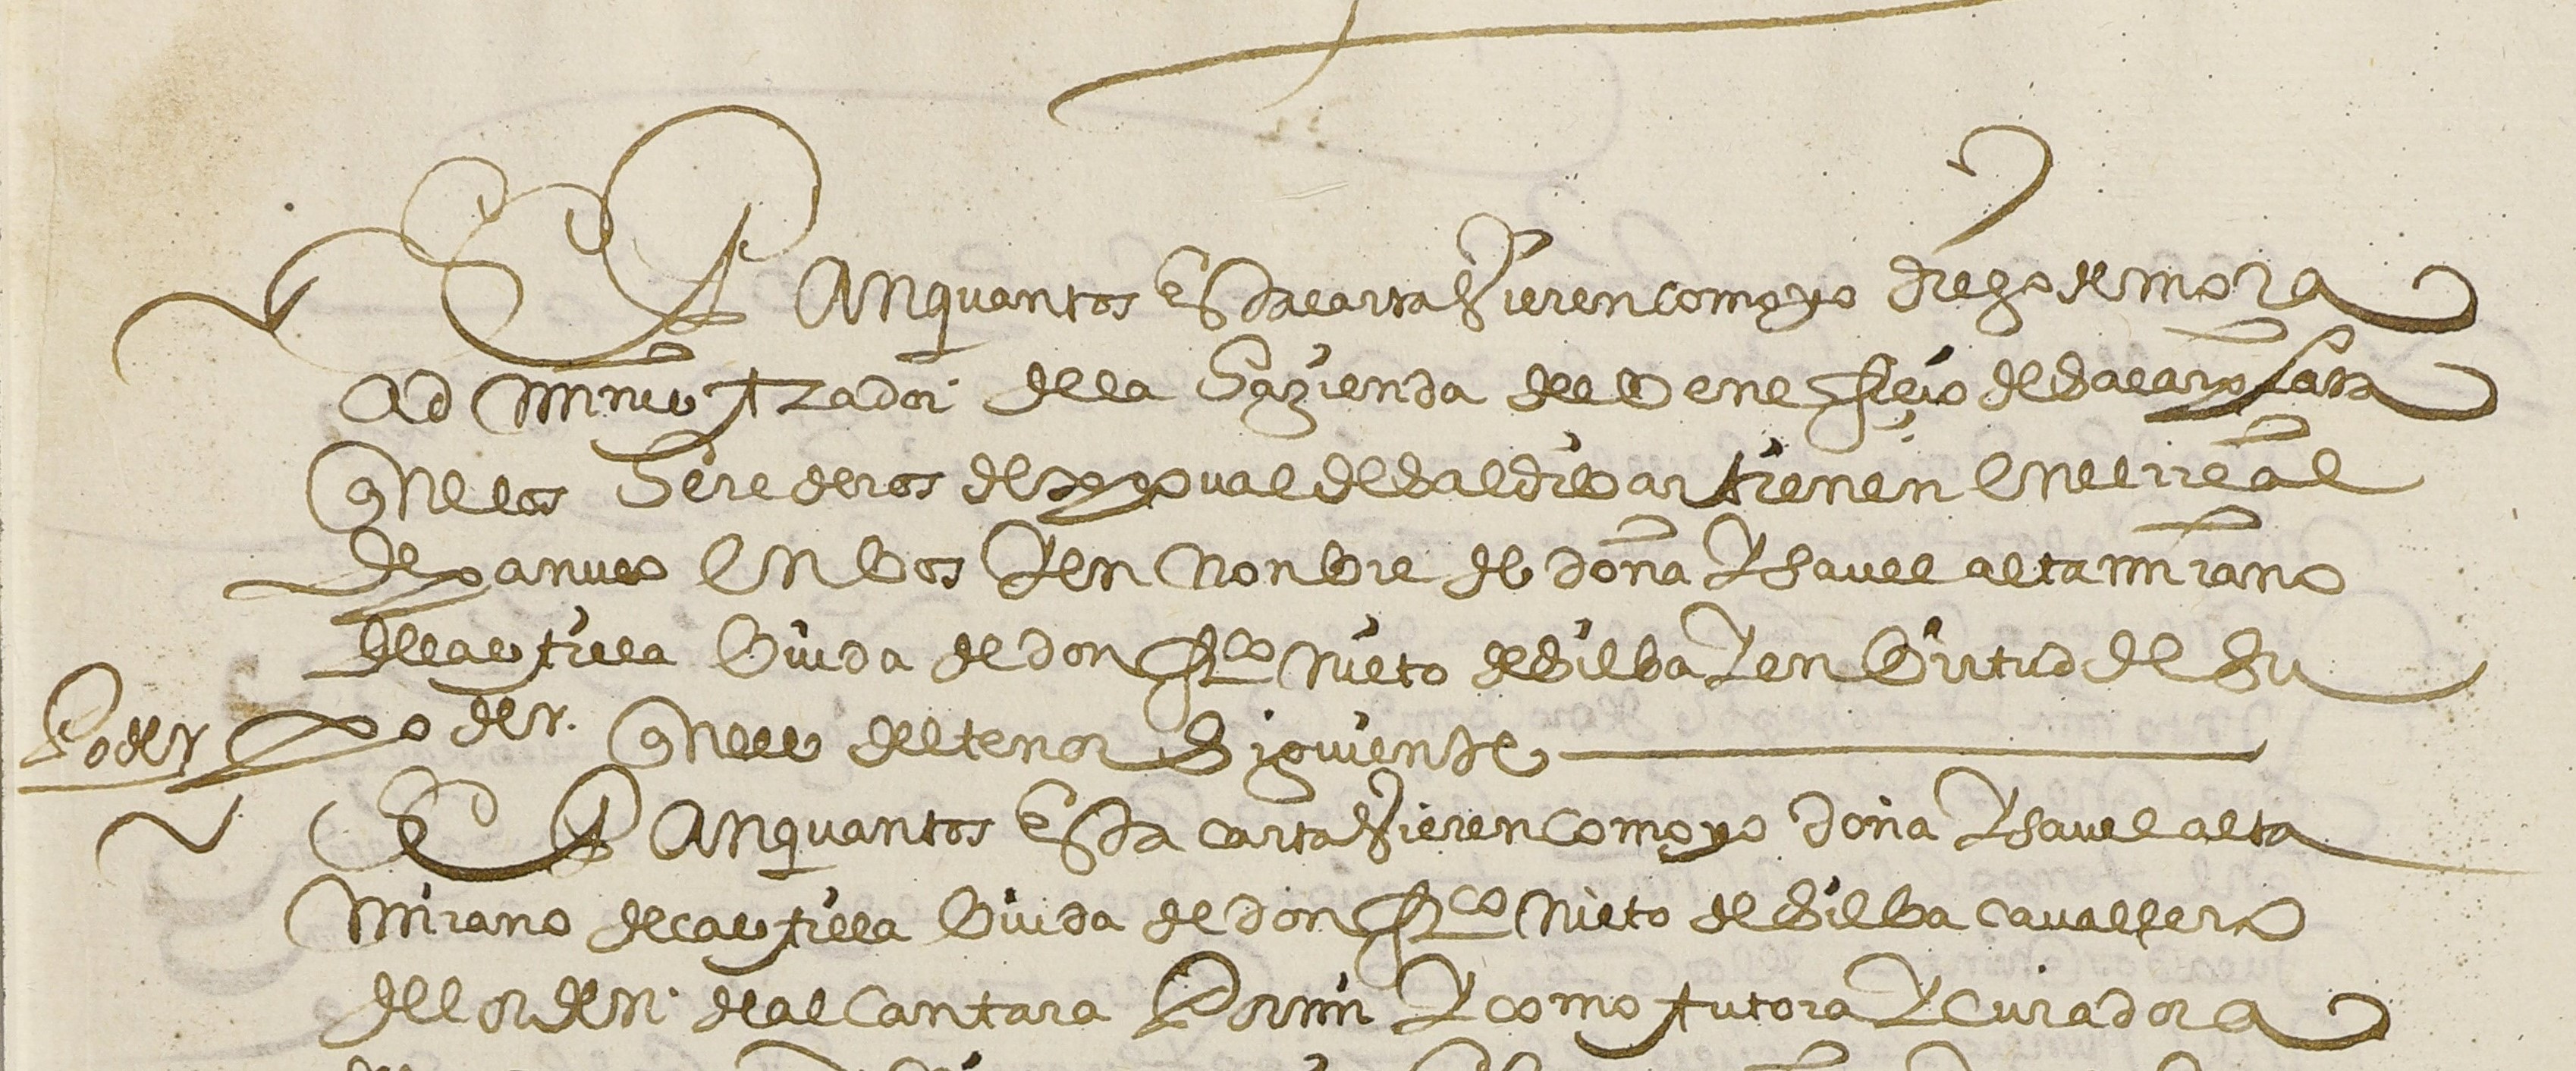 Royal Treasury against Doña Isabel de Castilla Altamirano for 827 pesos 1 tomín 7 grains worth 10 quintals of quicksilver